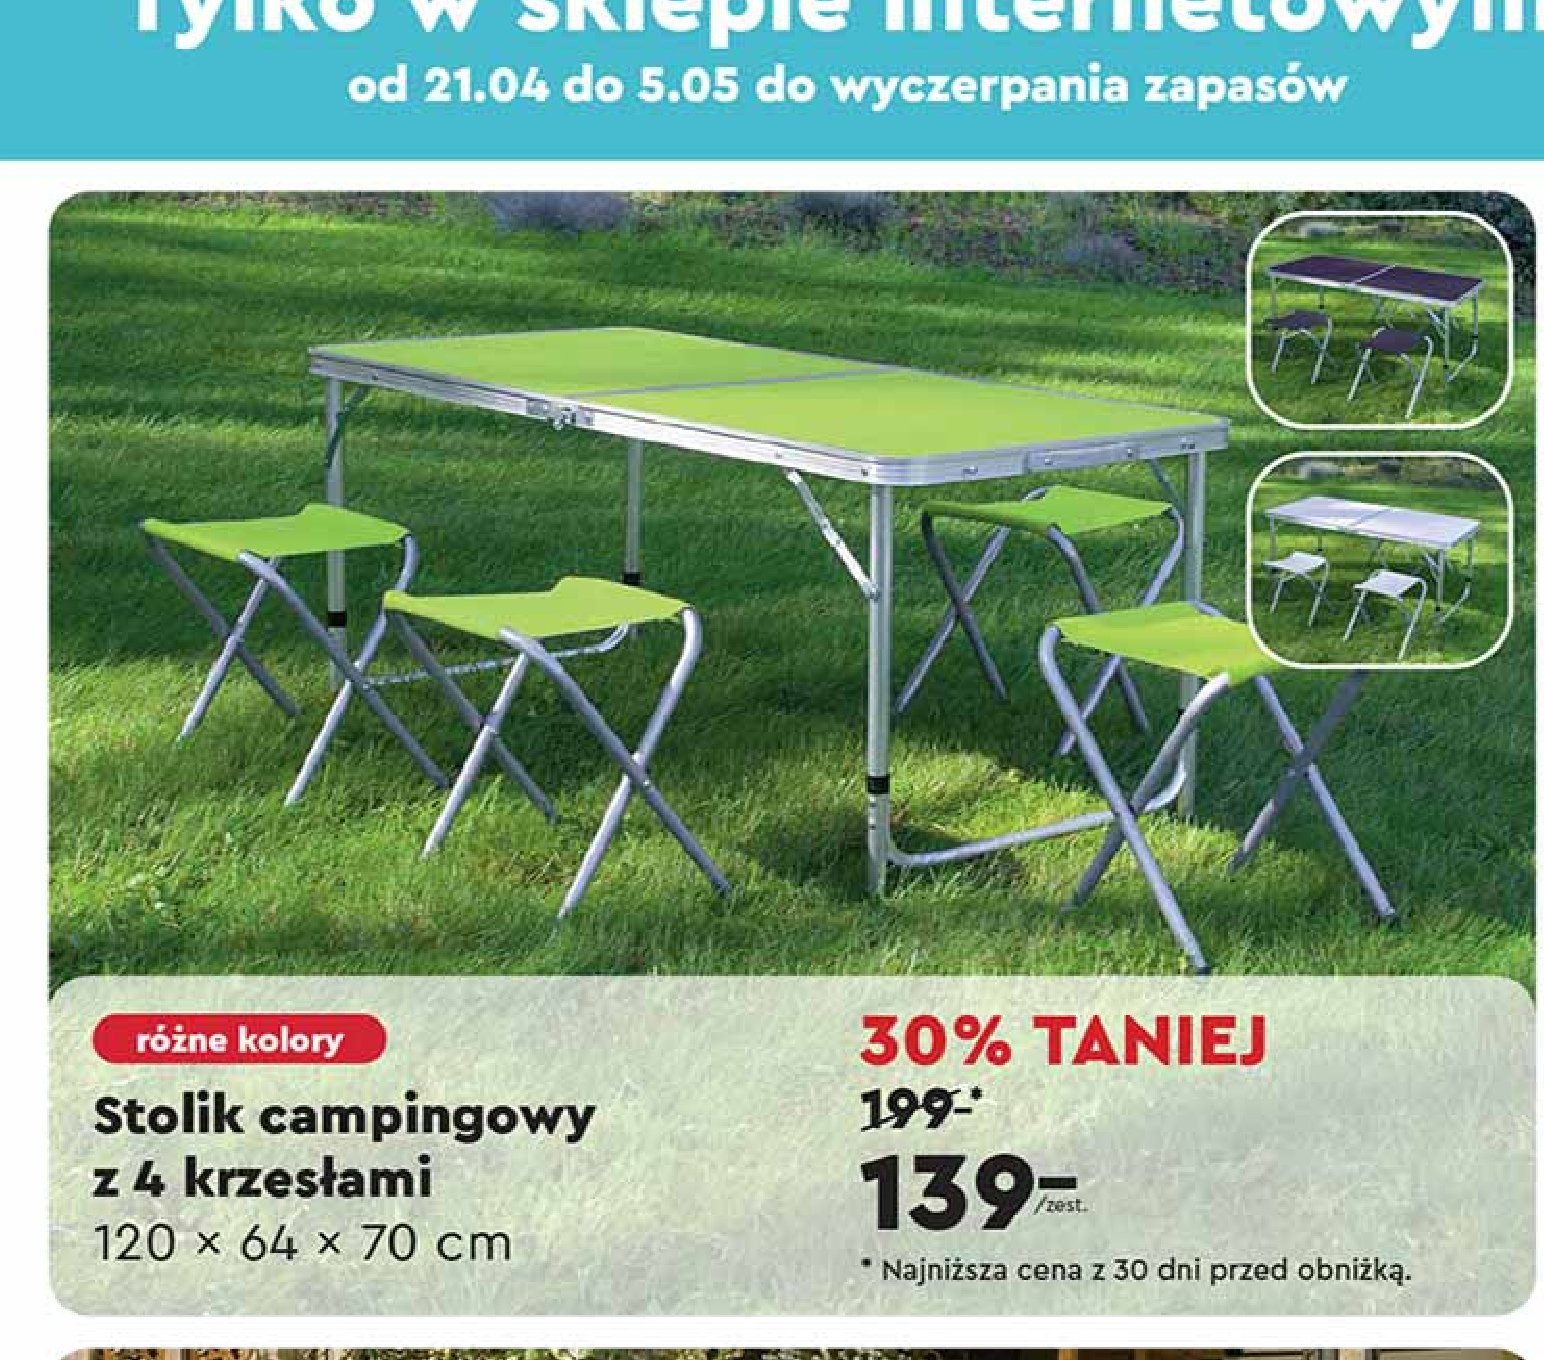 Stolik campingowy 120 x 64 x 70 cm + 4 krzesła promocja w Biedronka